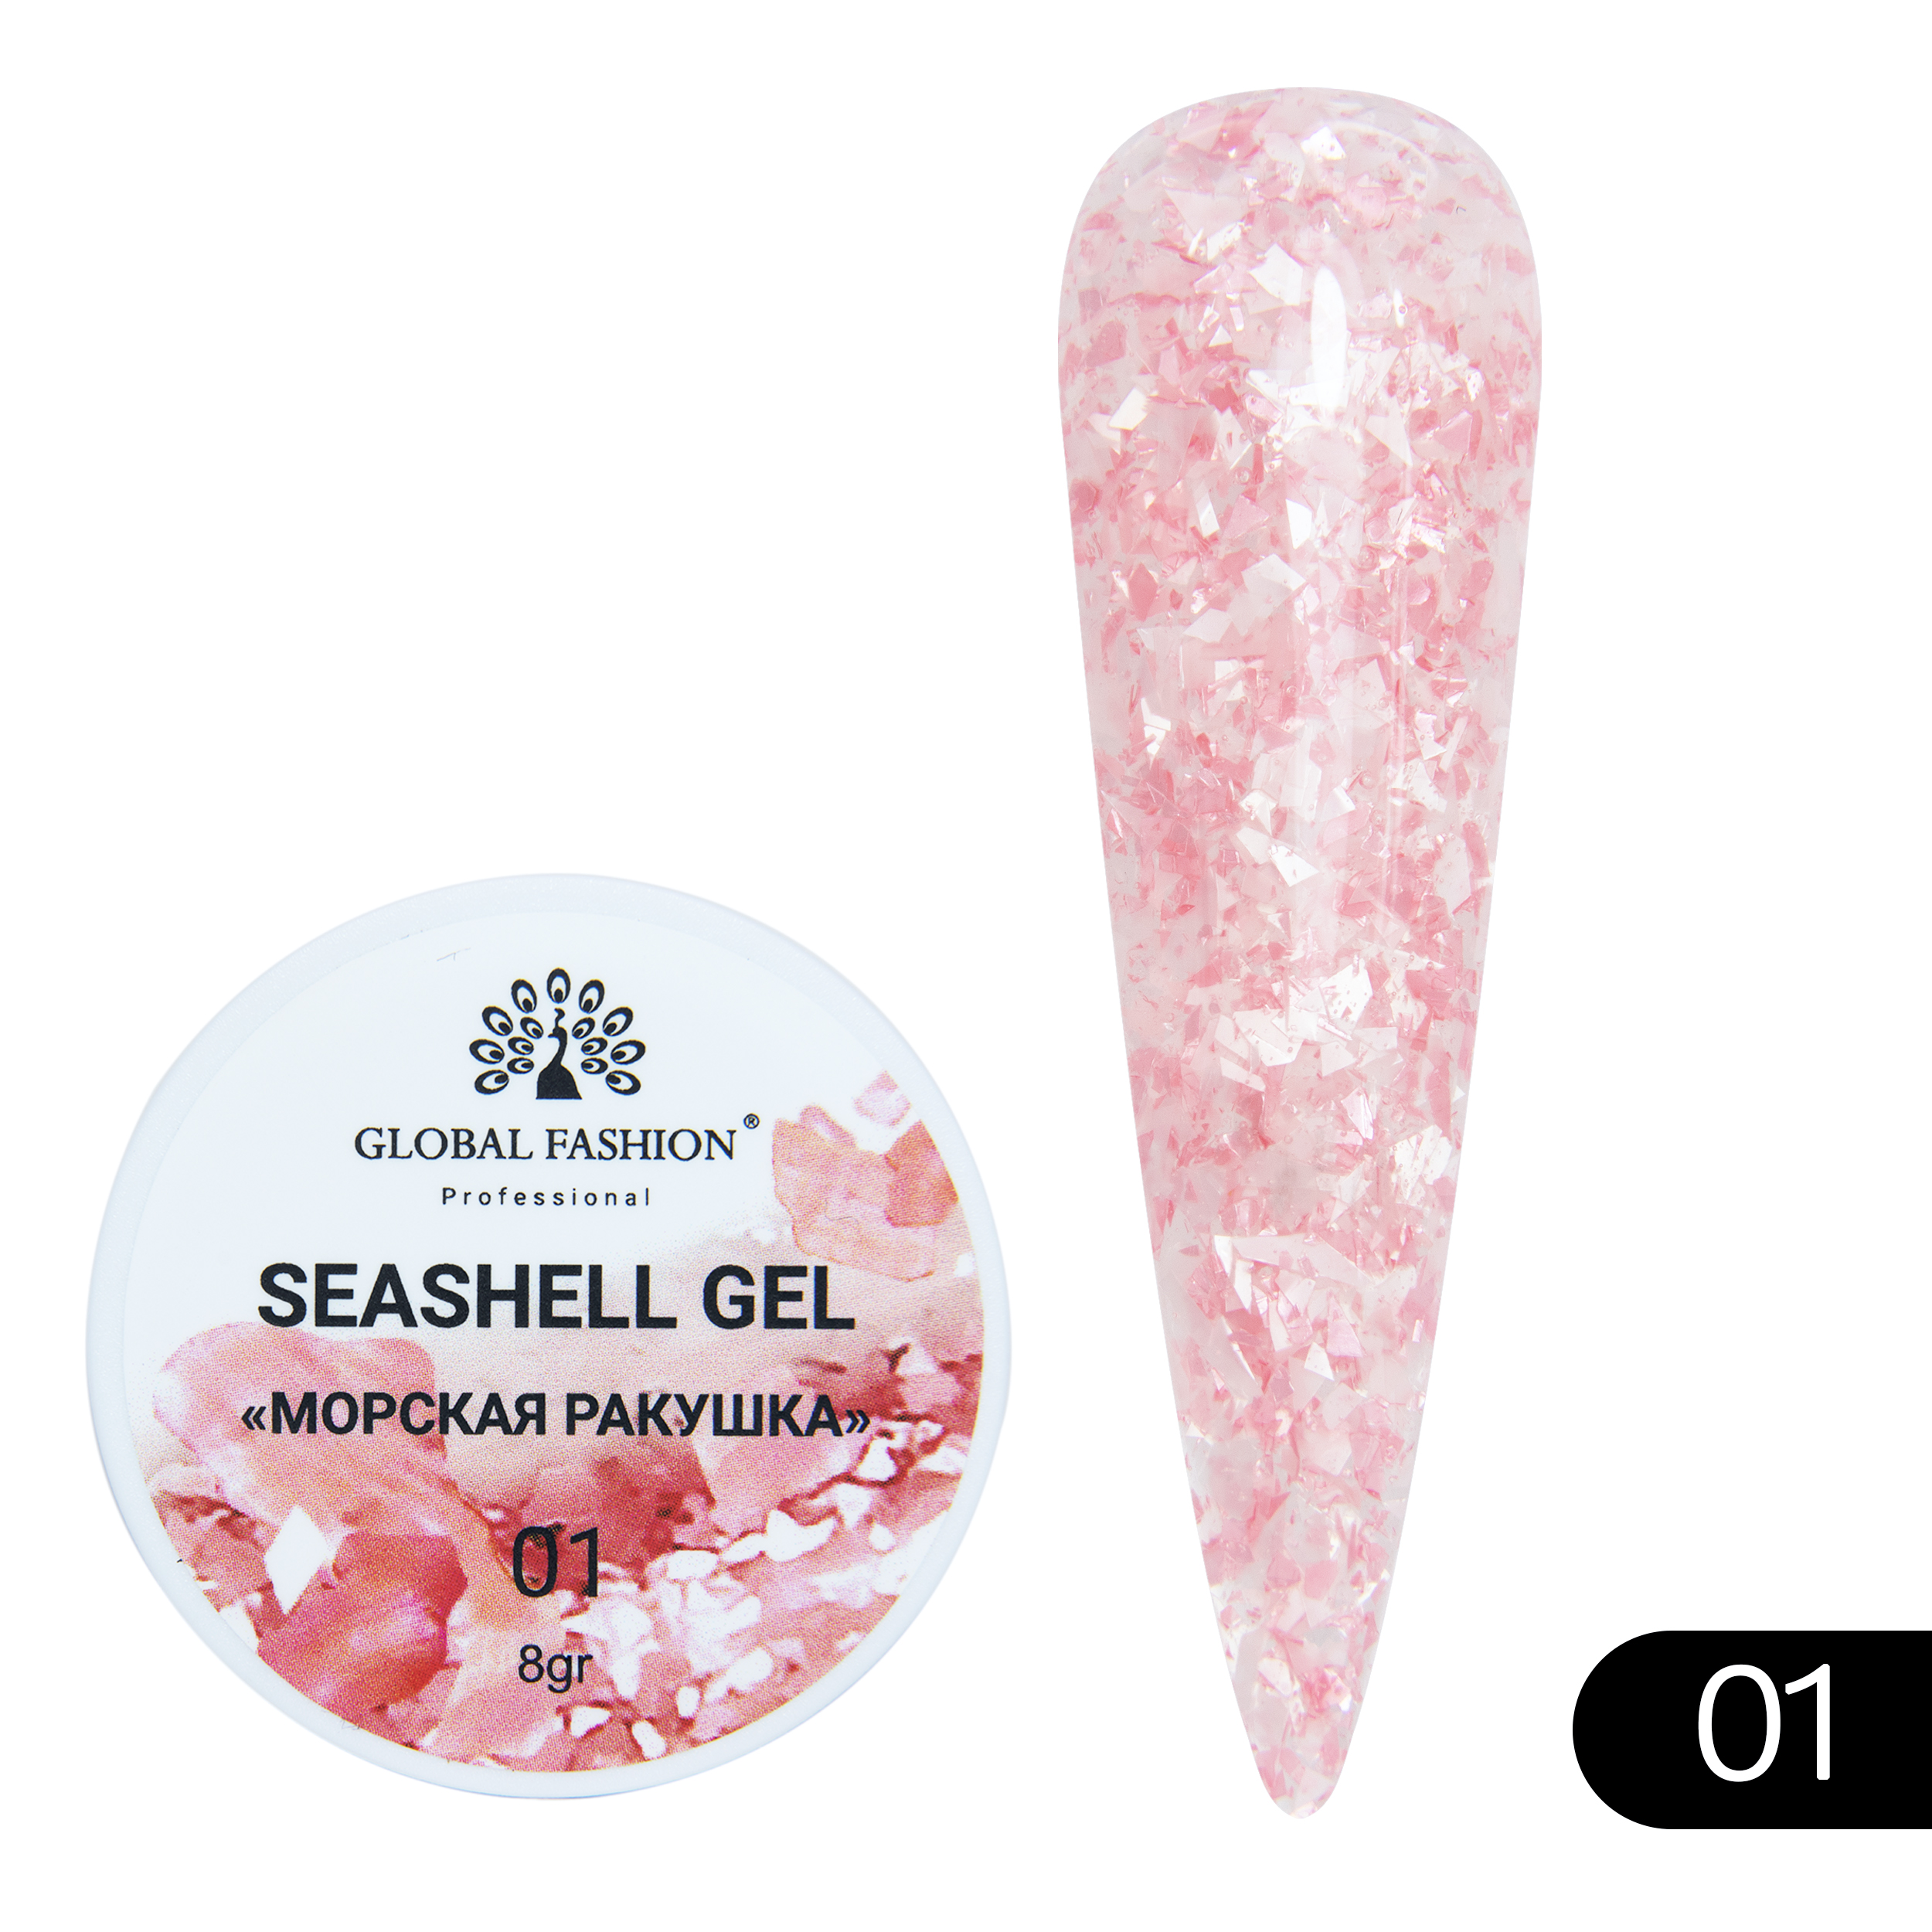 Гель-краска для ногтей Global Fashion Seashell Gel с мраморным эффектом ракушки №01 5 г закон ракушки повесть